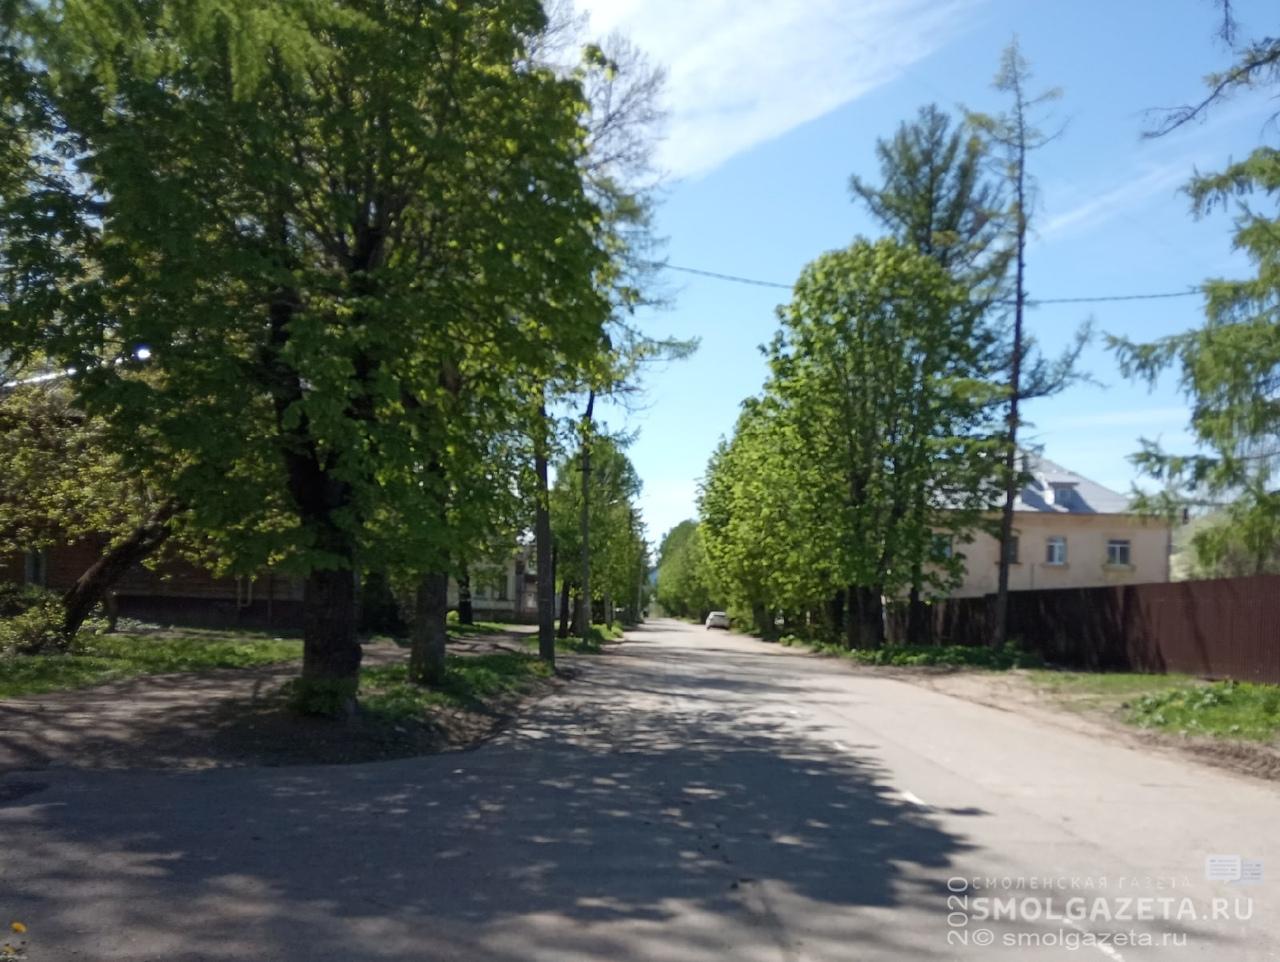 В Смоленске могут появиться улицы Барановского и Пашкова